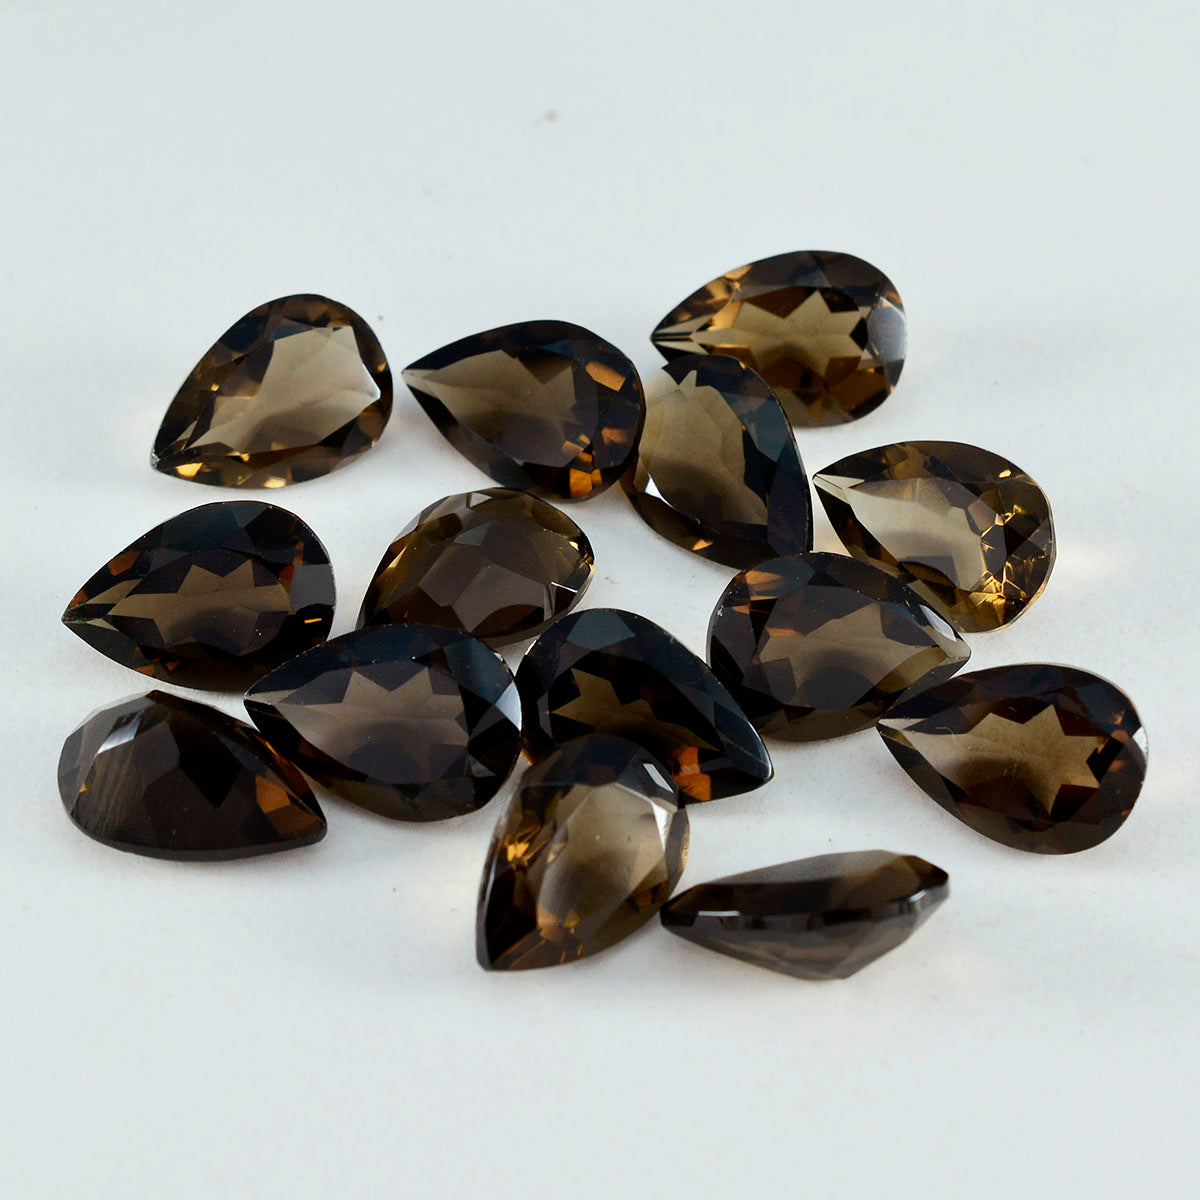 riyogems 1 шт. настоящий коричневый дымчатый кварц ограненный 7x10 мм грушевидная форма удивительного качества свободный камень